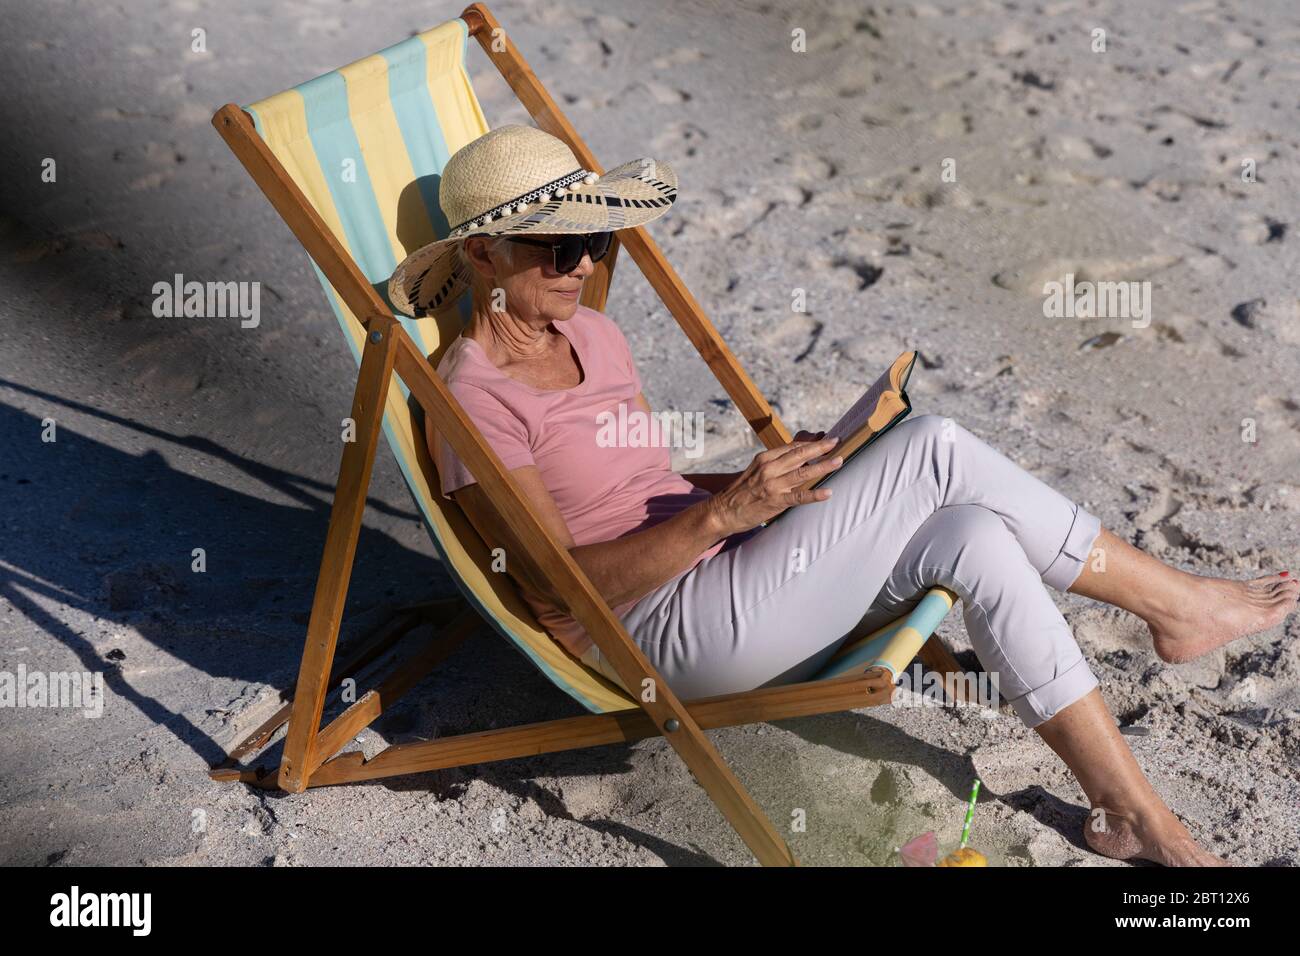 Femme de race blanche assise sur une chaise longue et lisant à la plage. Banque D'Images